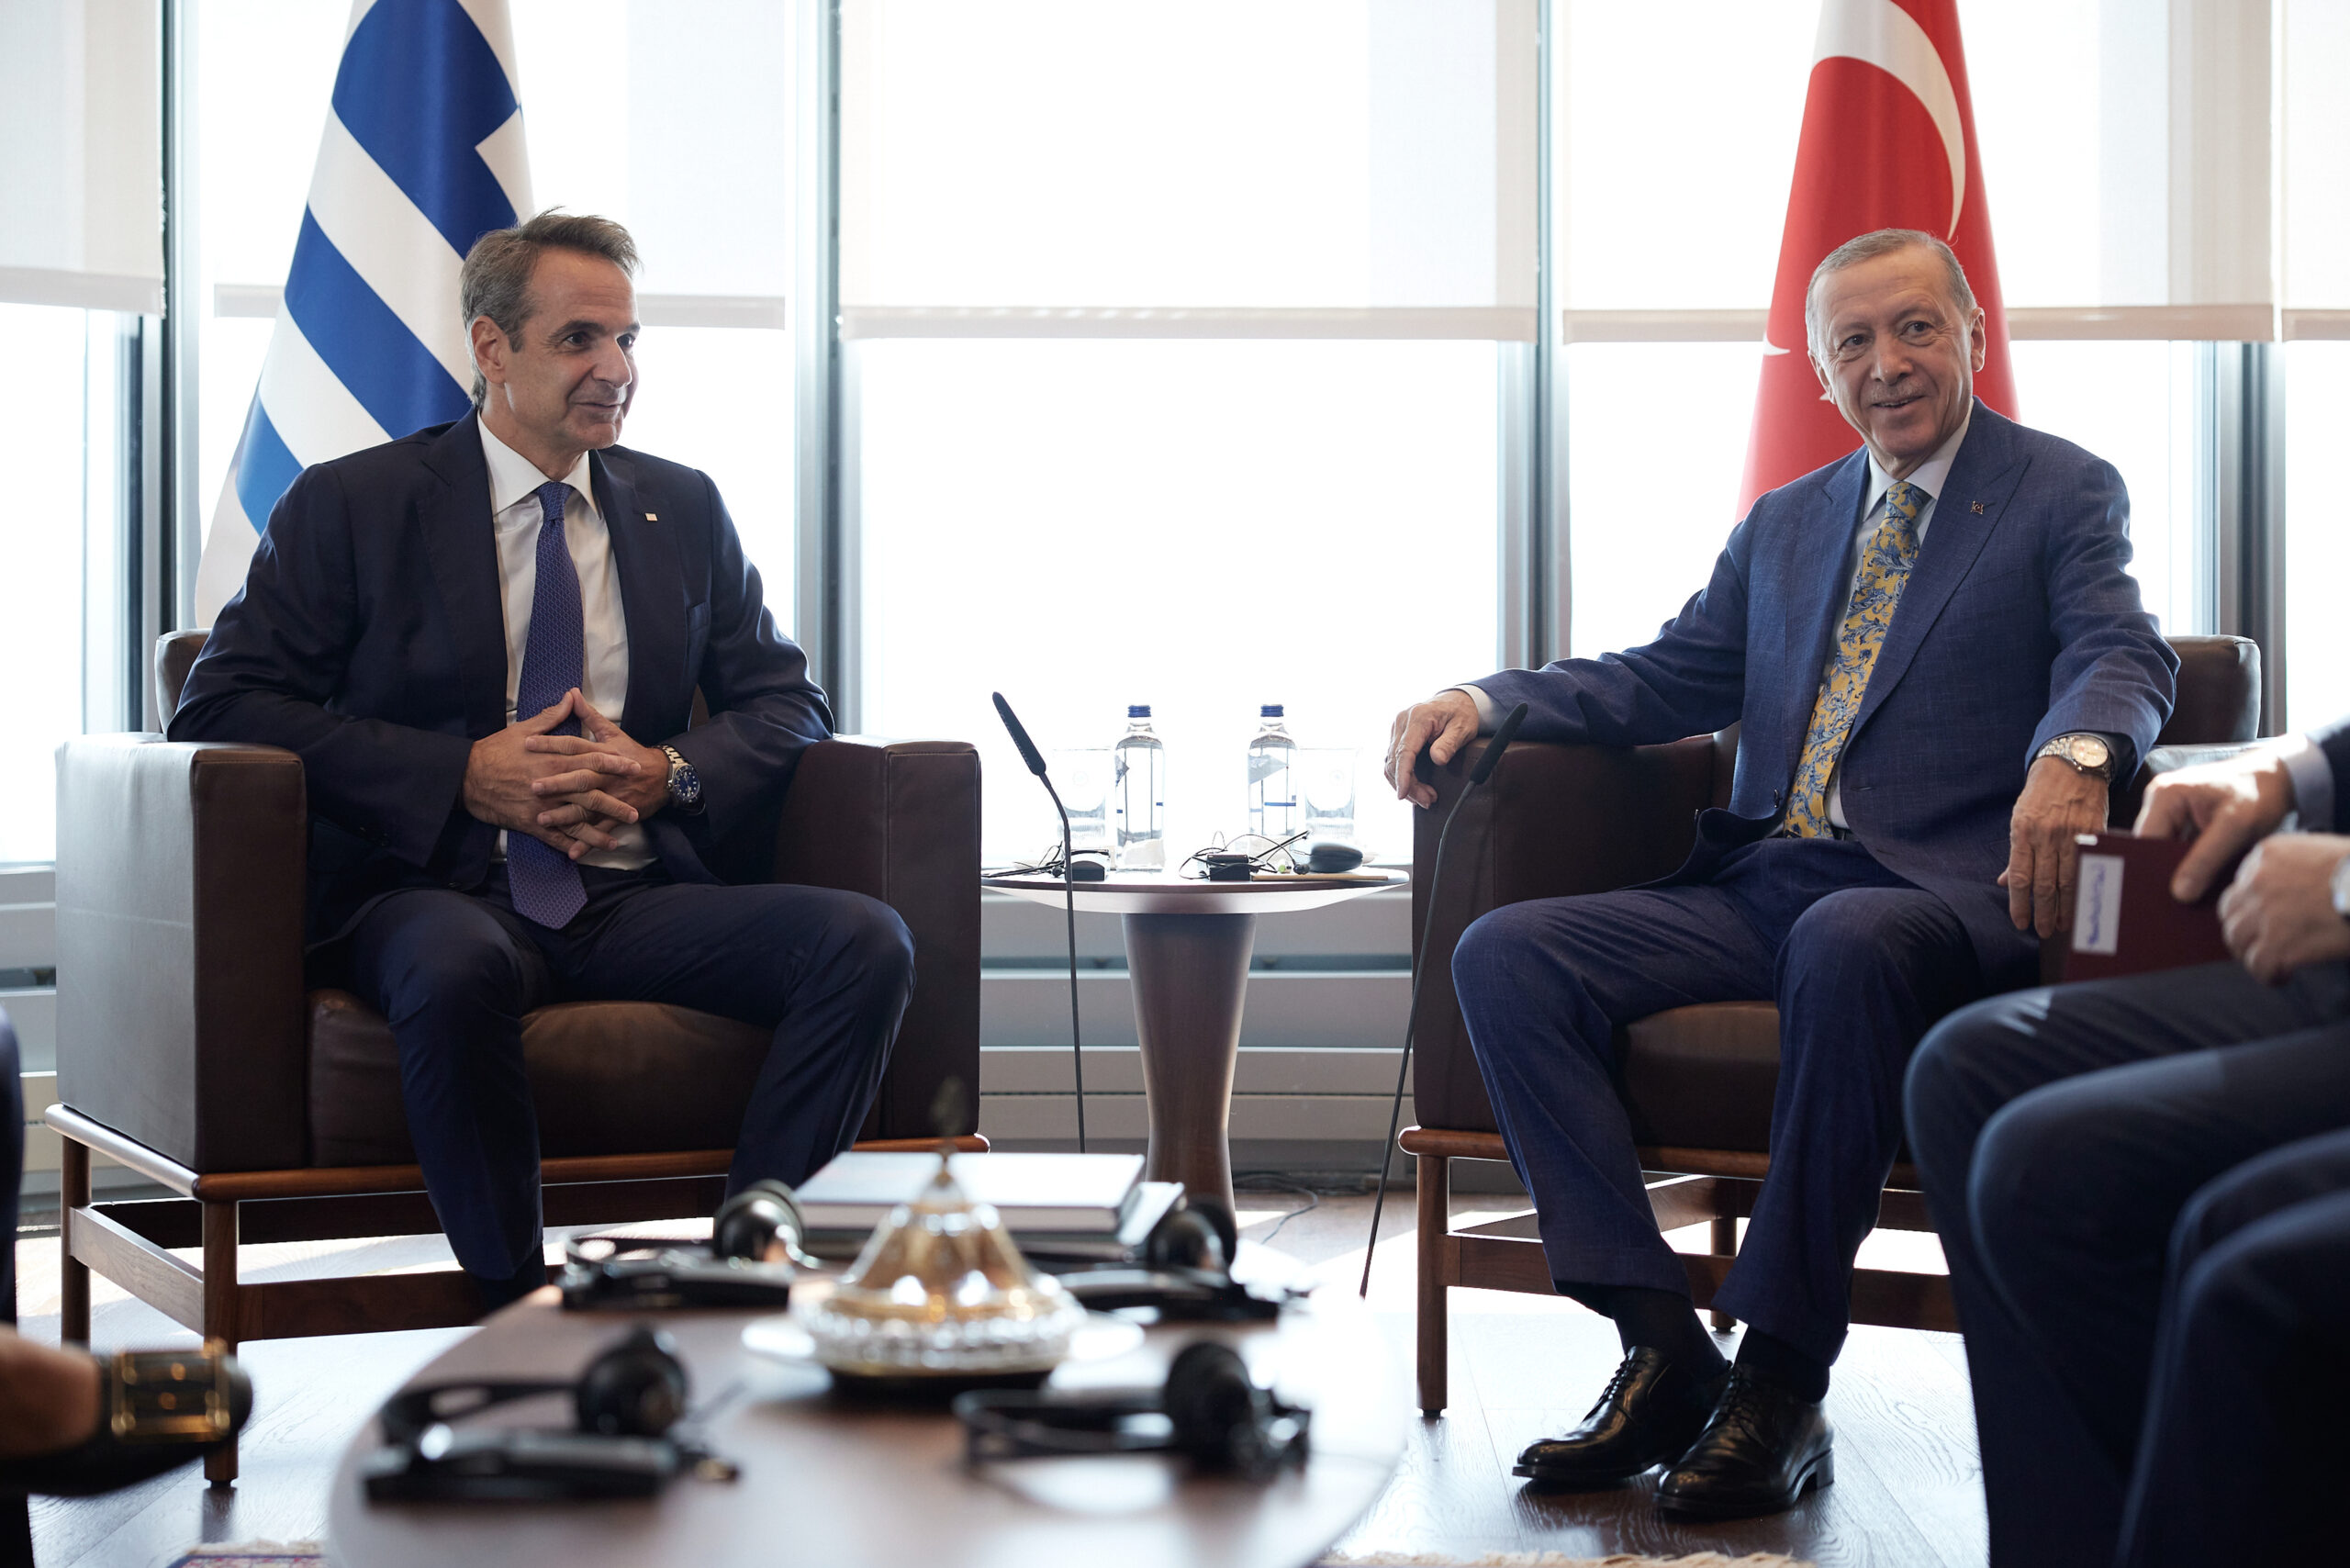 Τρ. Καρατράντος στο Πρώτο: Η απόκλιση Ελλάδας, Τουρκίας έγκειται στο τι μπορούμε να συζητήσουμε (audio)